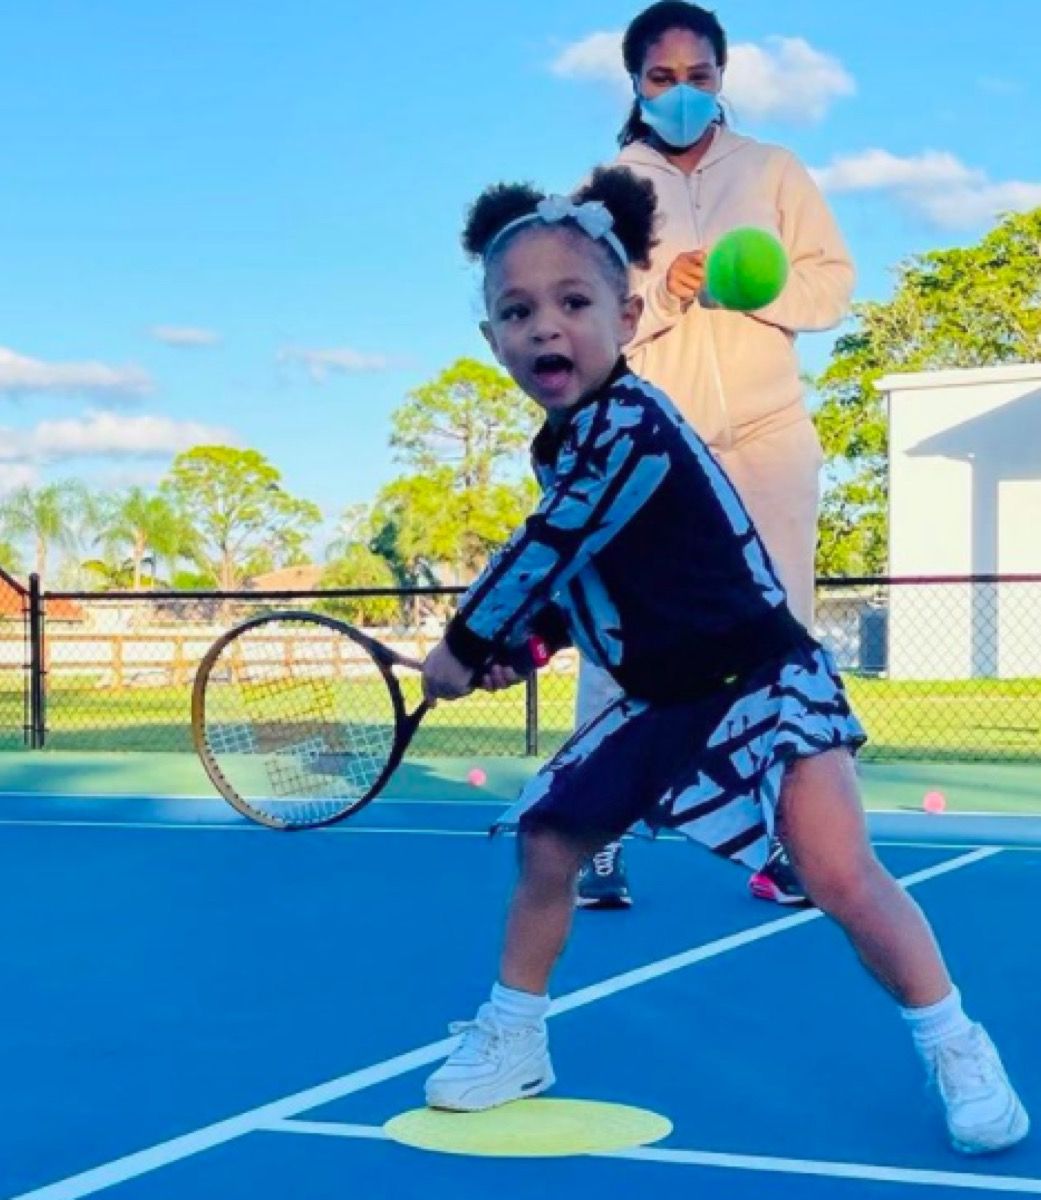 Serena Williams visiškai spinduliuoja dukrą, žaidžiančią tenisą